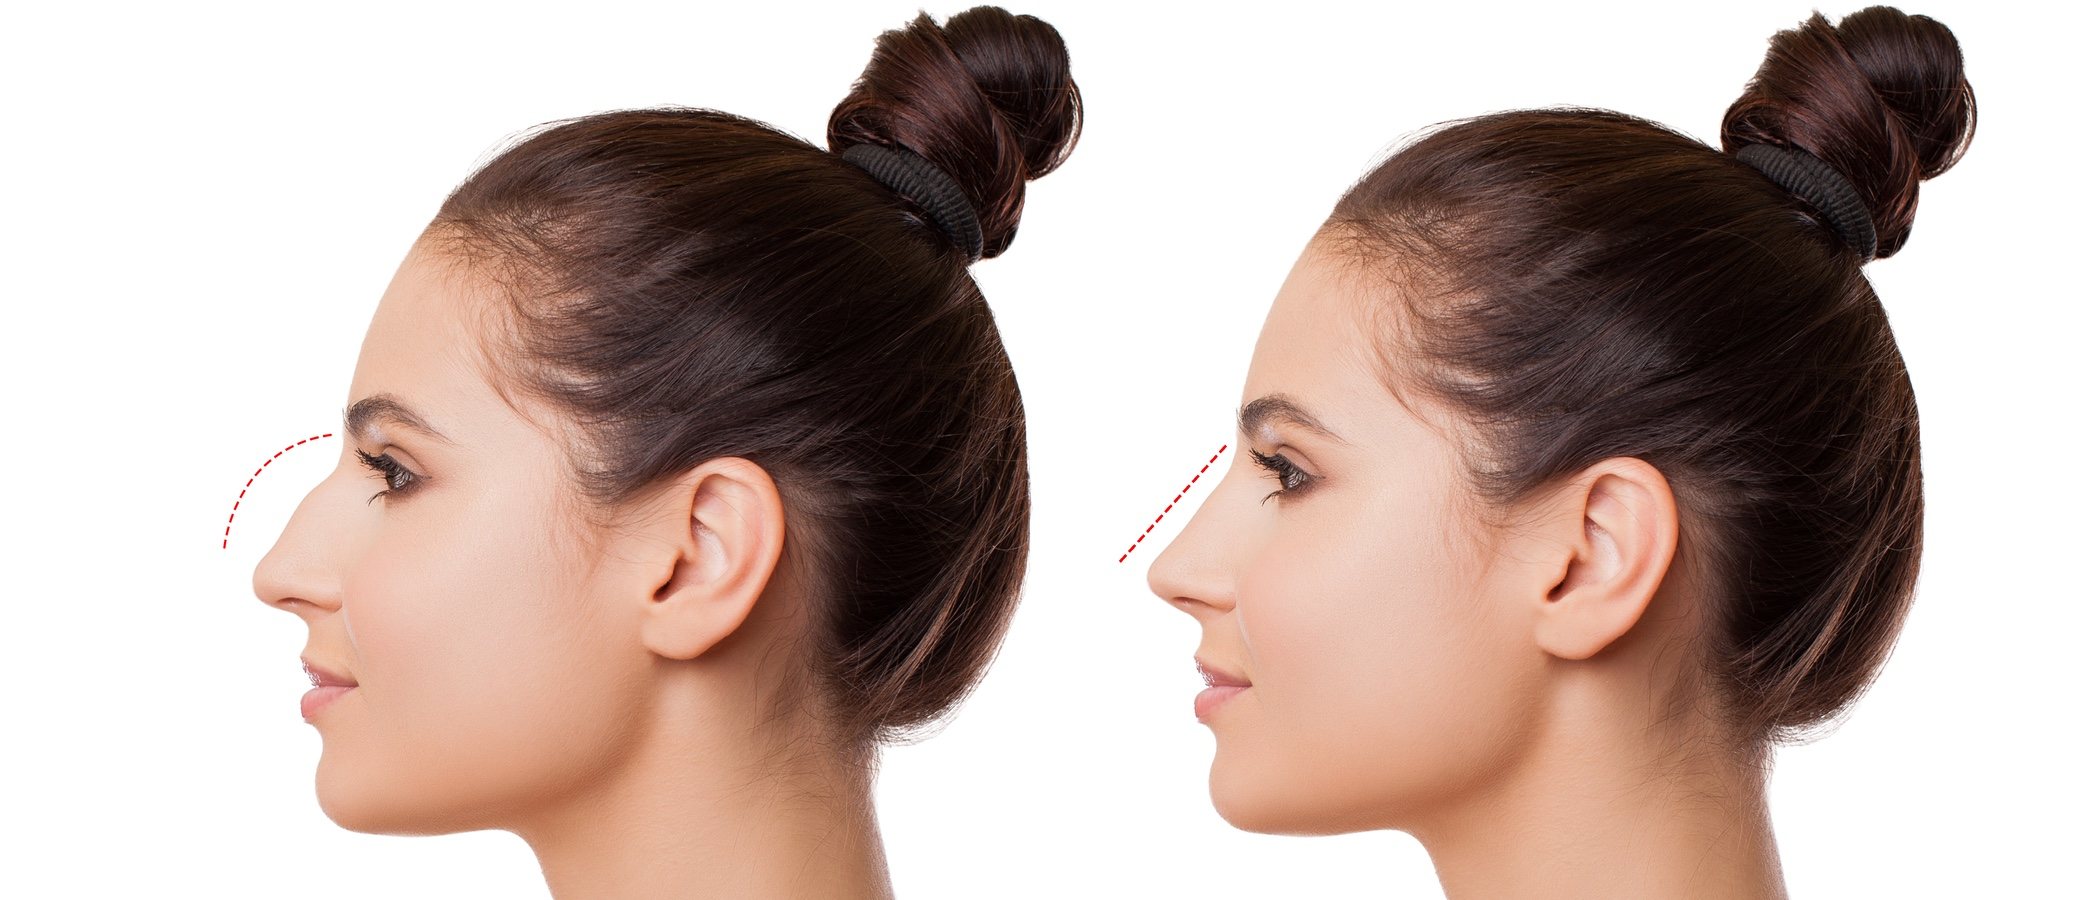 Rinoplastia: todo lo que necesitas saber sobre la cirugía de nariz